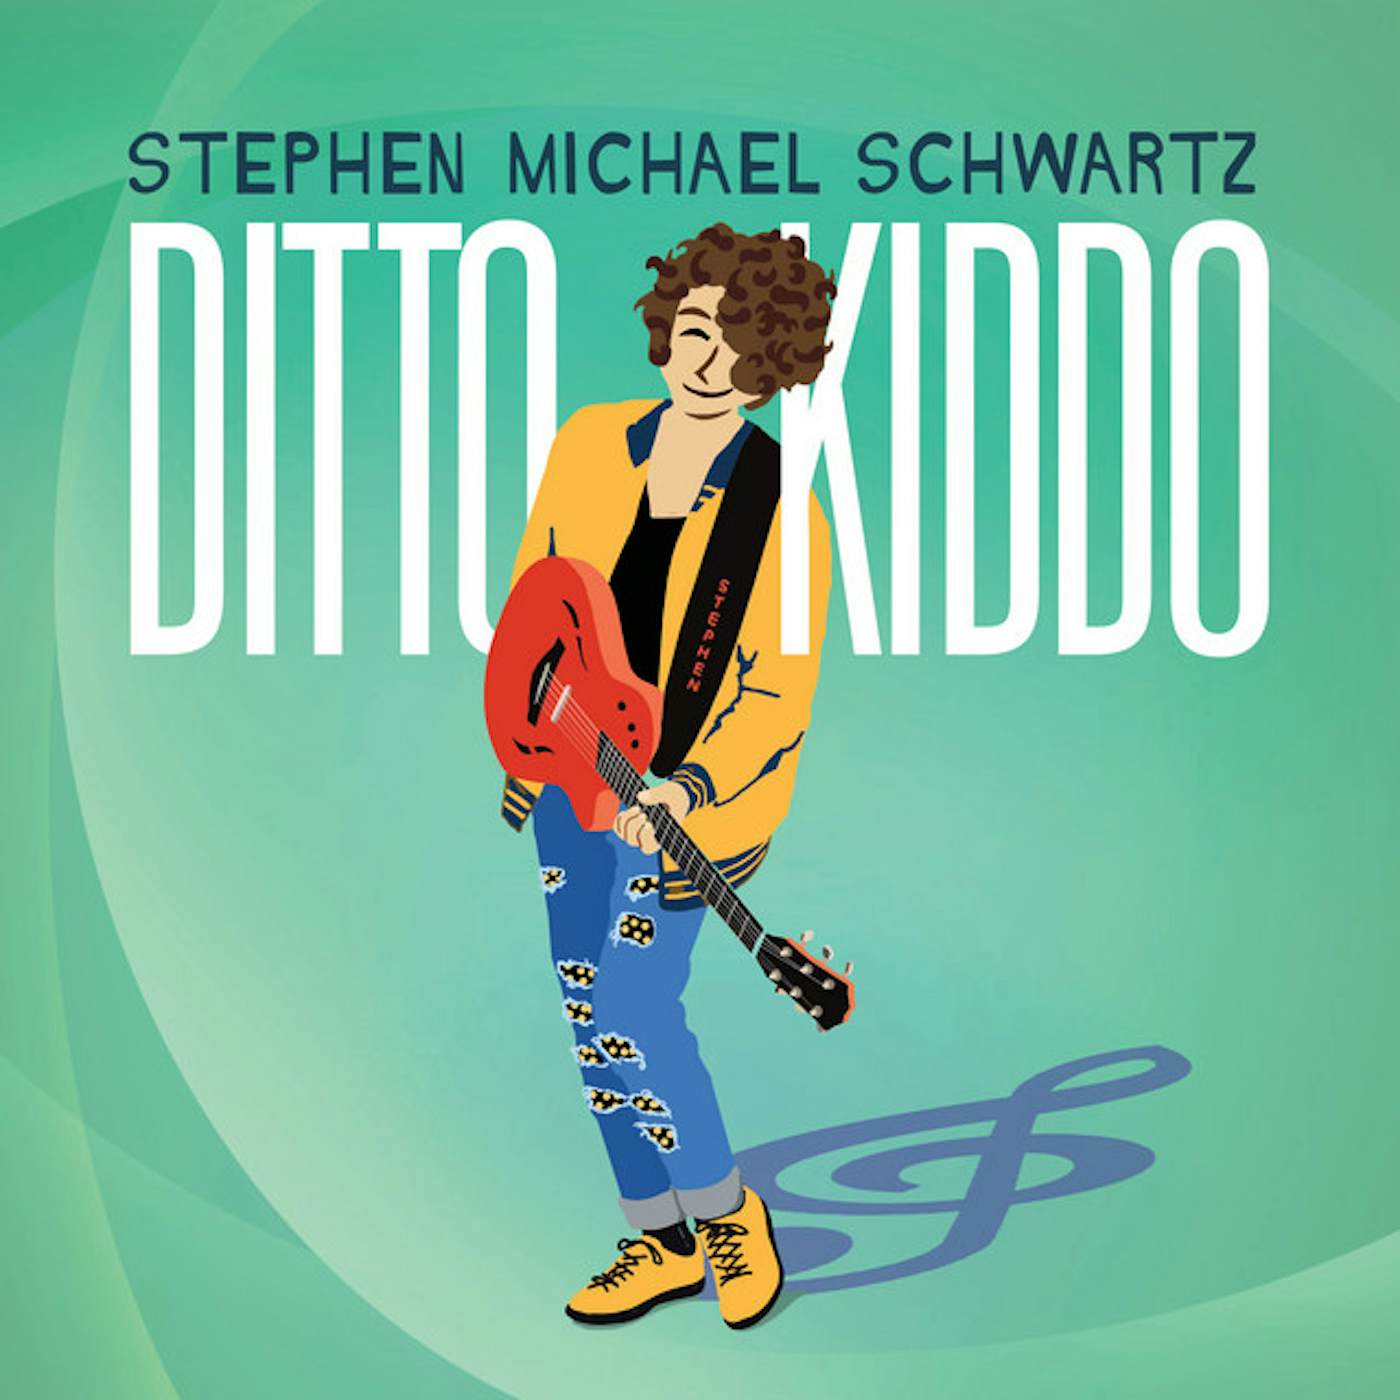 Stephen Michael Schwartz DITTO KIDDO CD